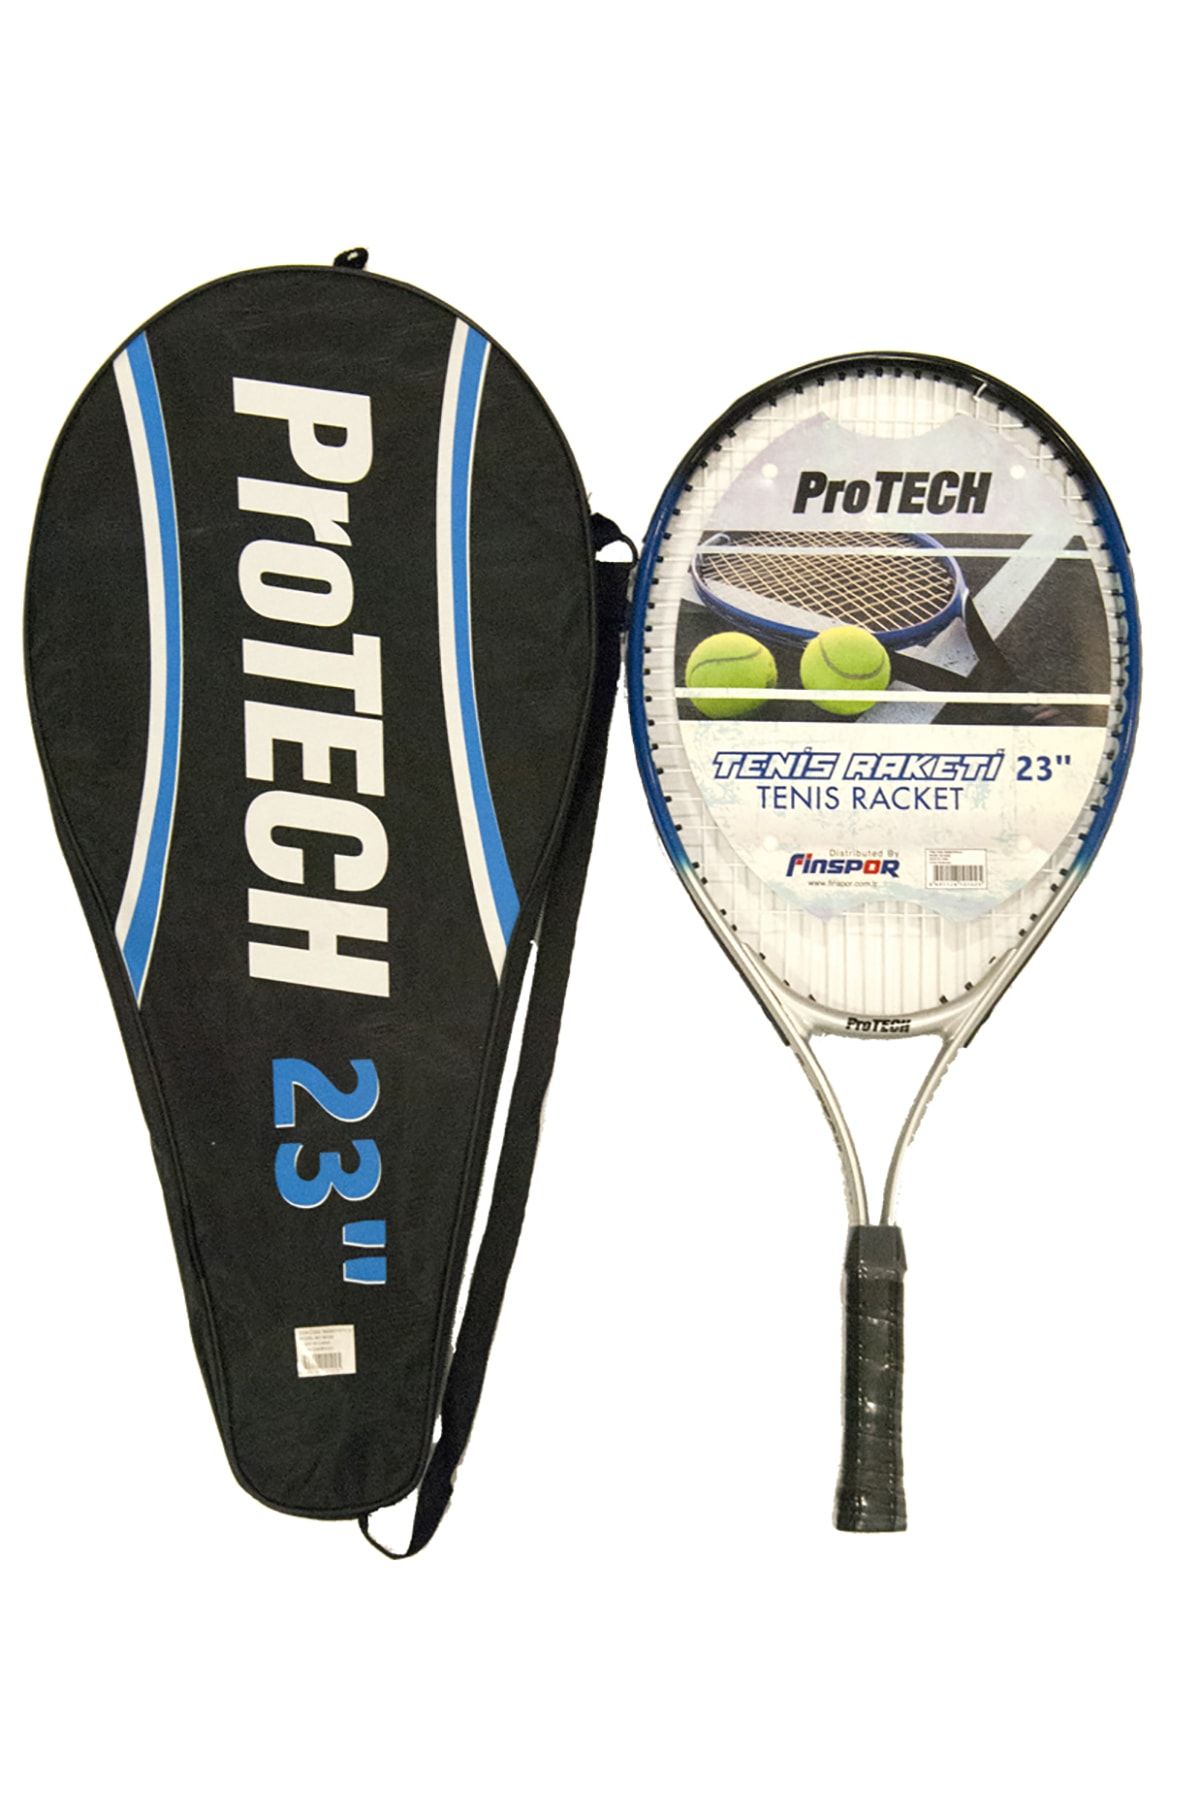 Protech M500 Tenis Raketi - 23